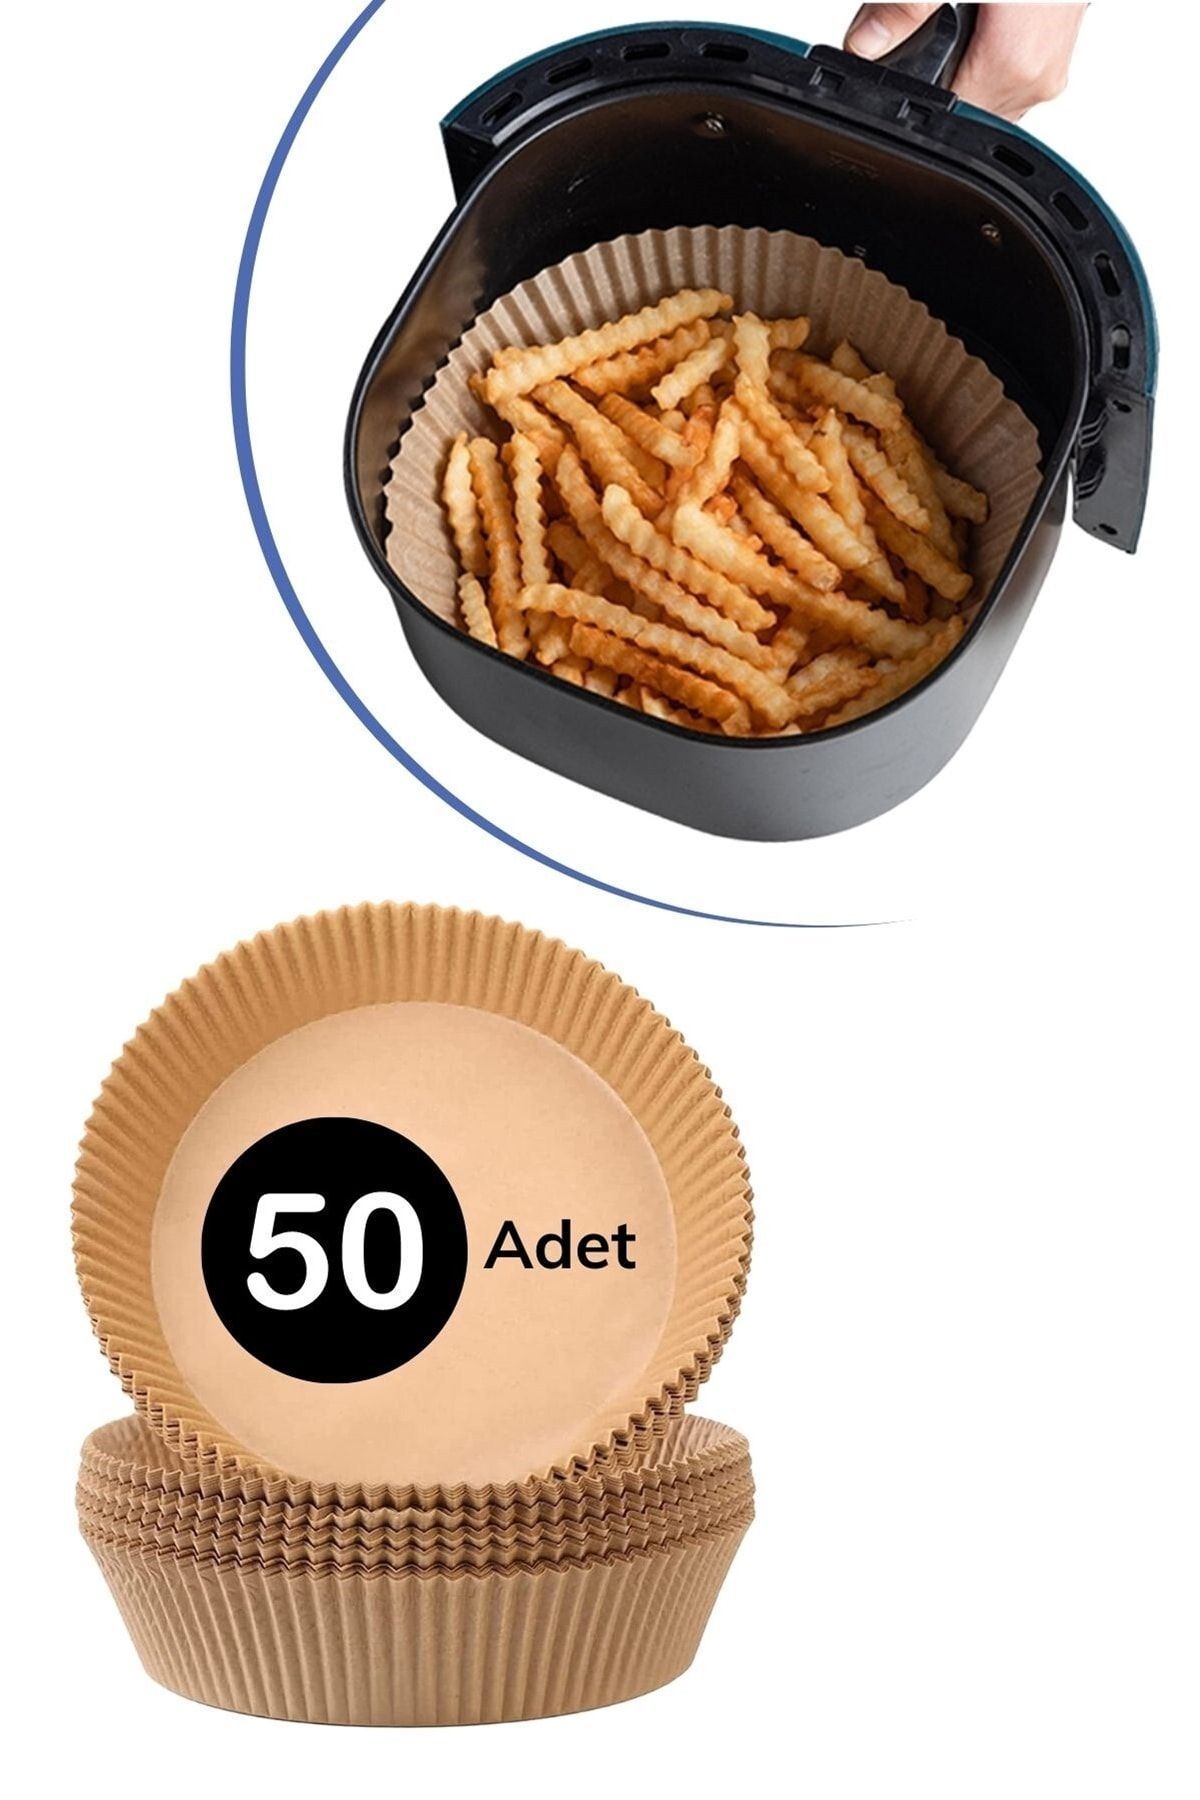 Buffer ® 50 Adet Air Fryer Pişirme Kağıdı Tek Kullanımlık Hava Fritöz Yuvarlak Tabak Model